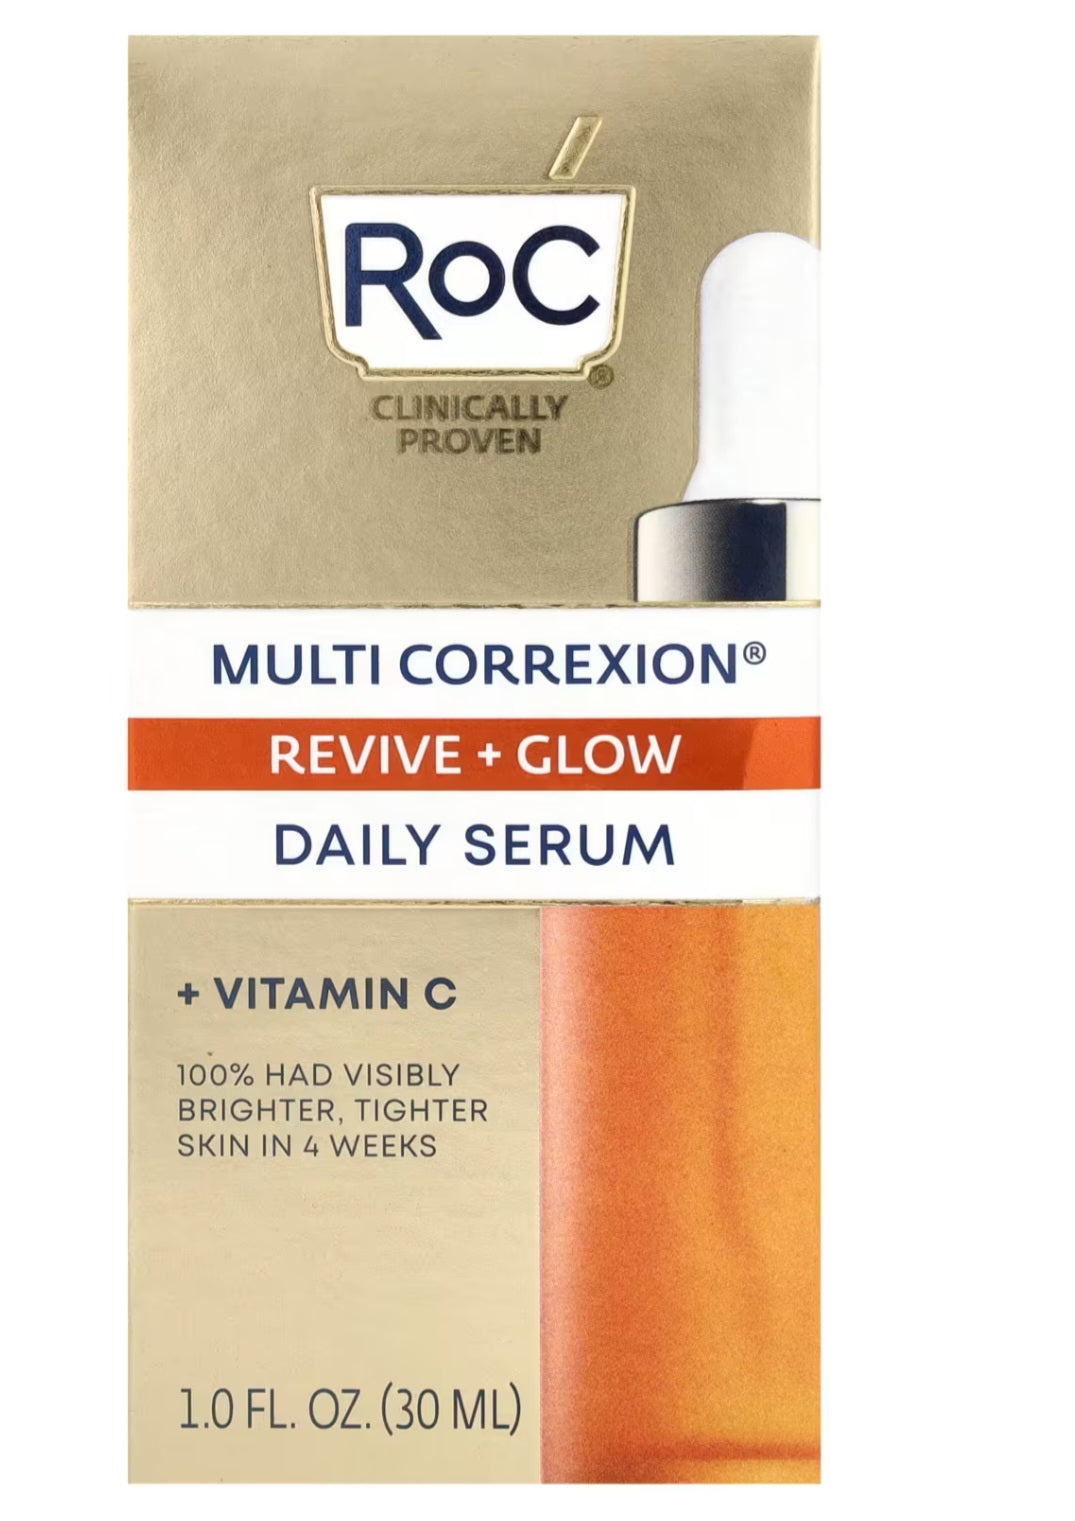 RoC
Multi Correxion, Revive + Glow, Daily Serum + Vitamin C